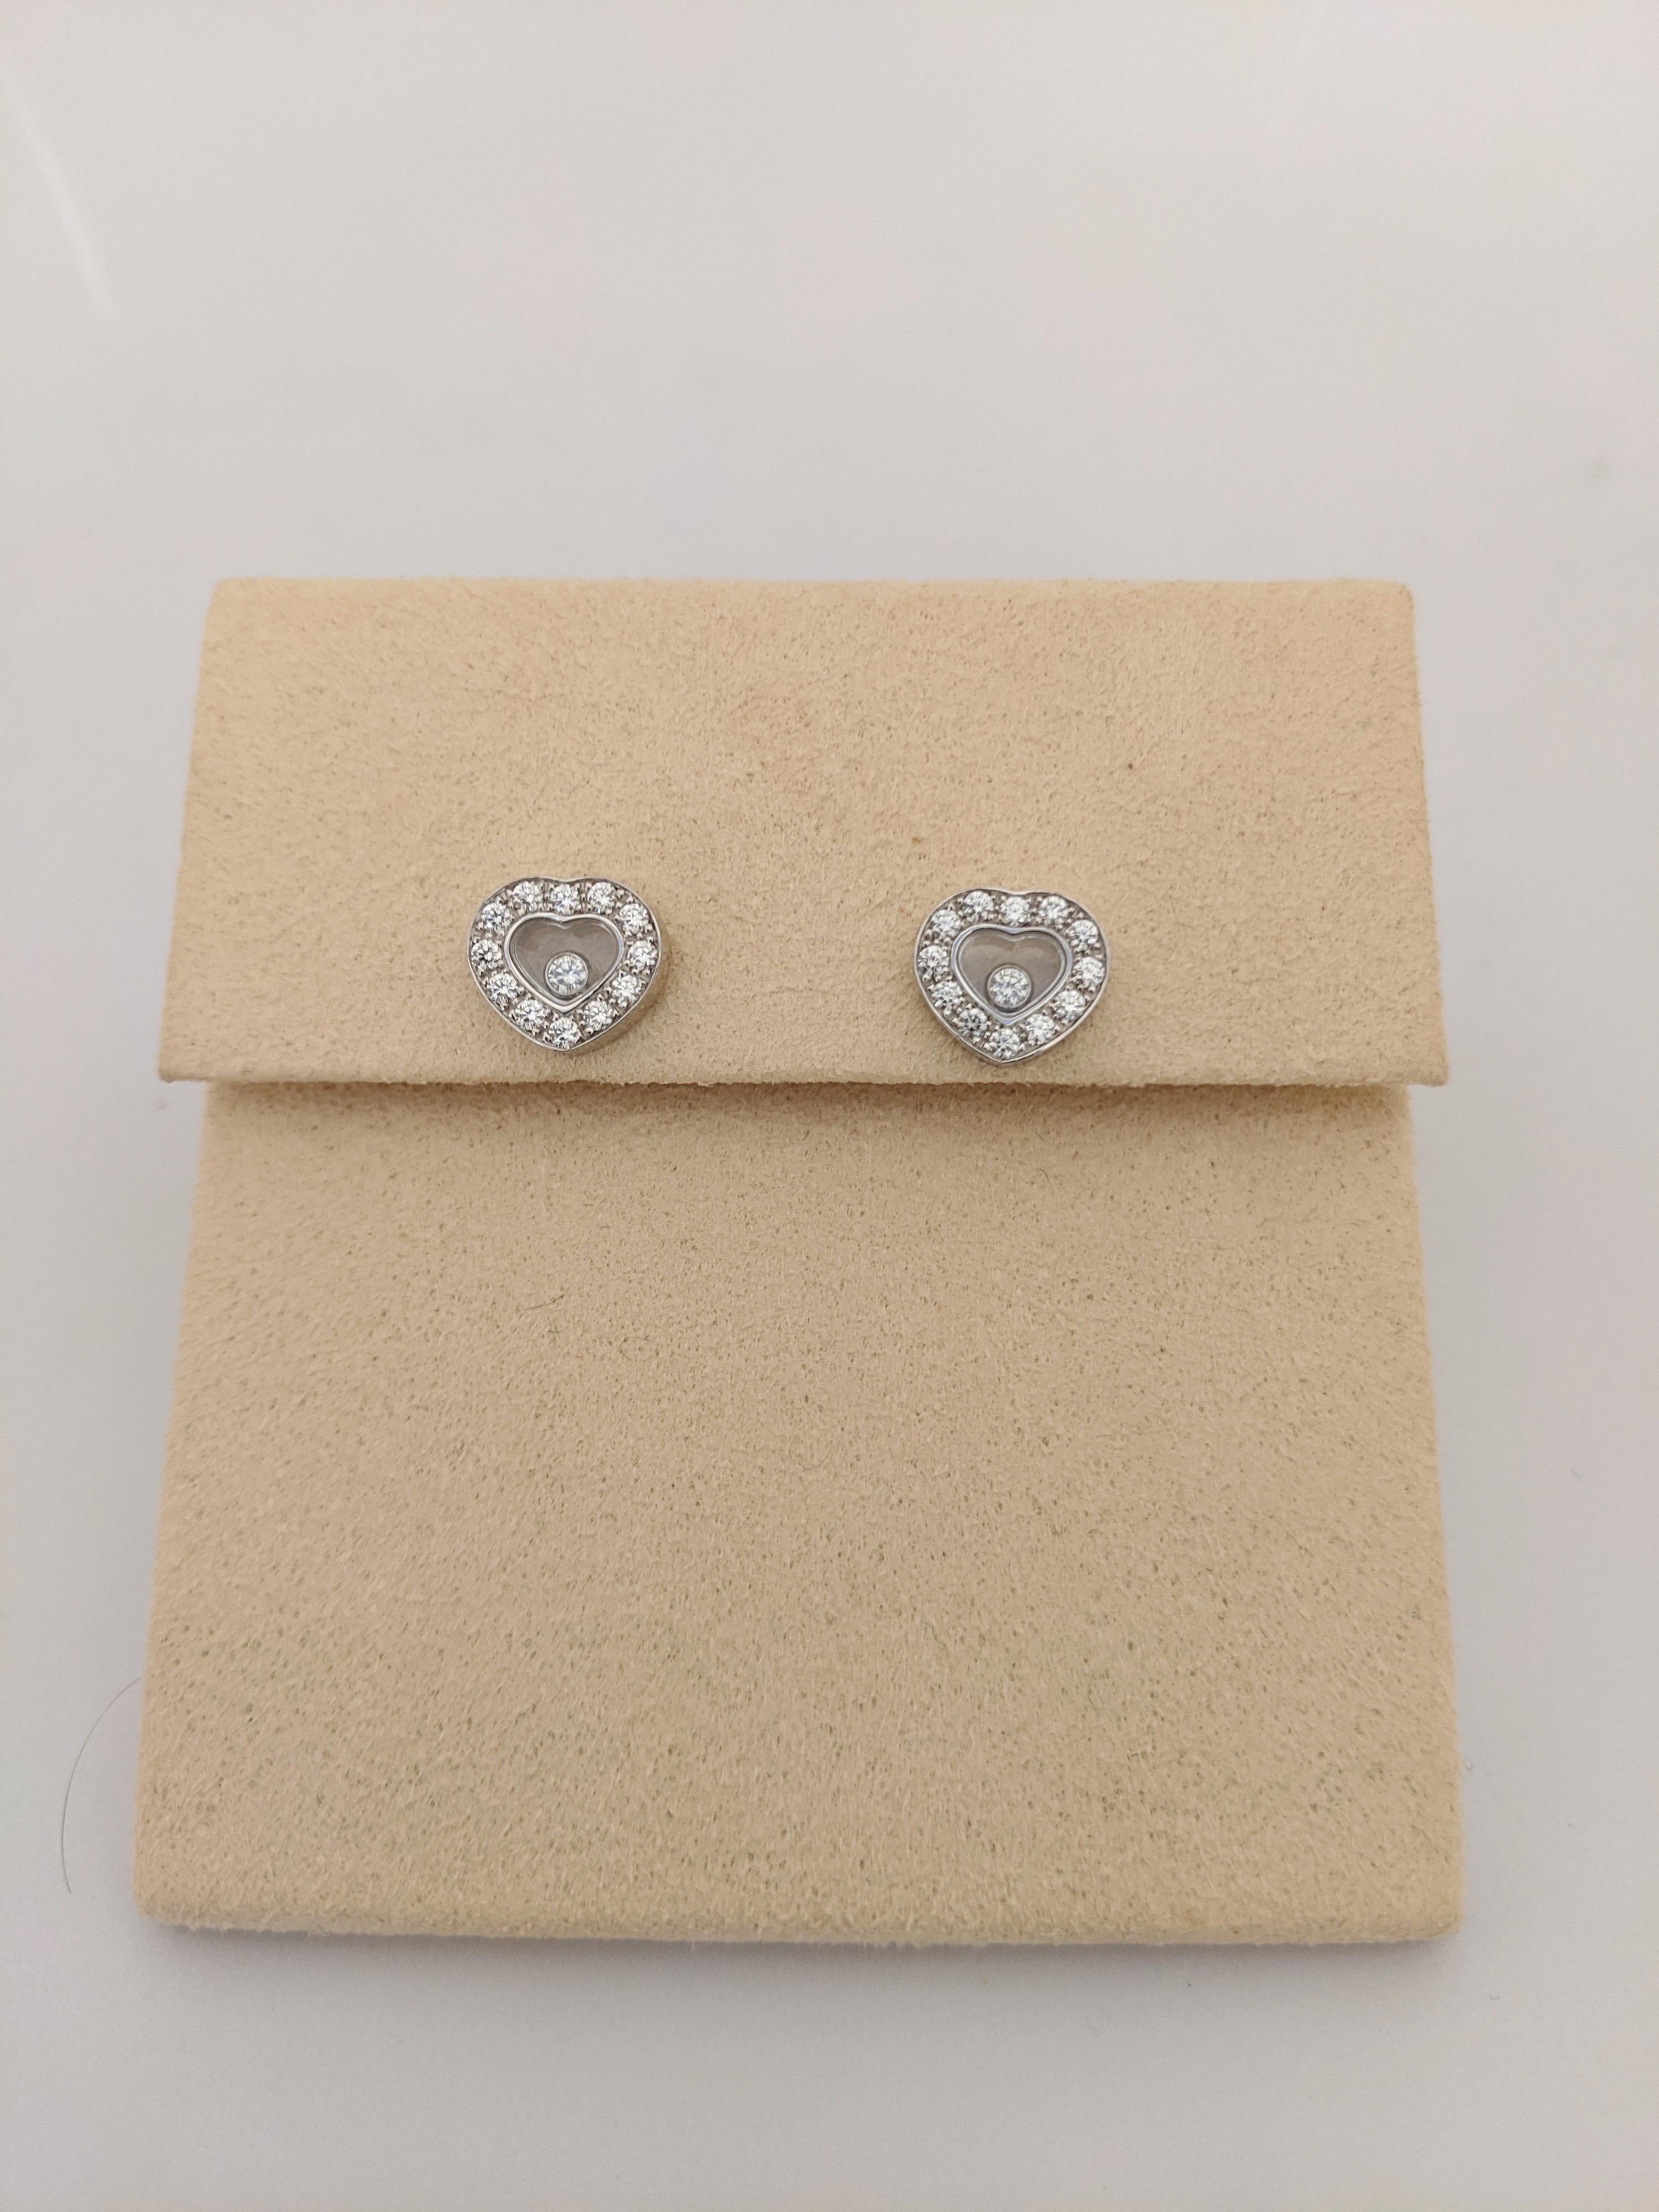 Chopard 18 Karat Gold Diamond Heart Stud Earrings with Single Floating ...